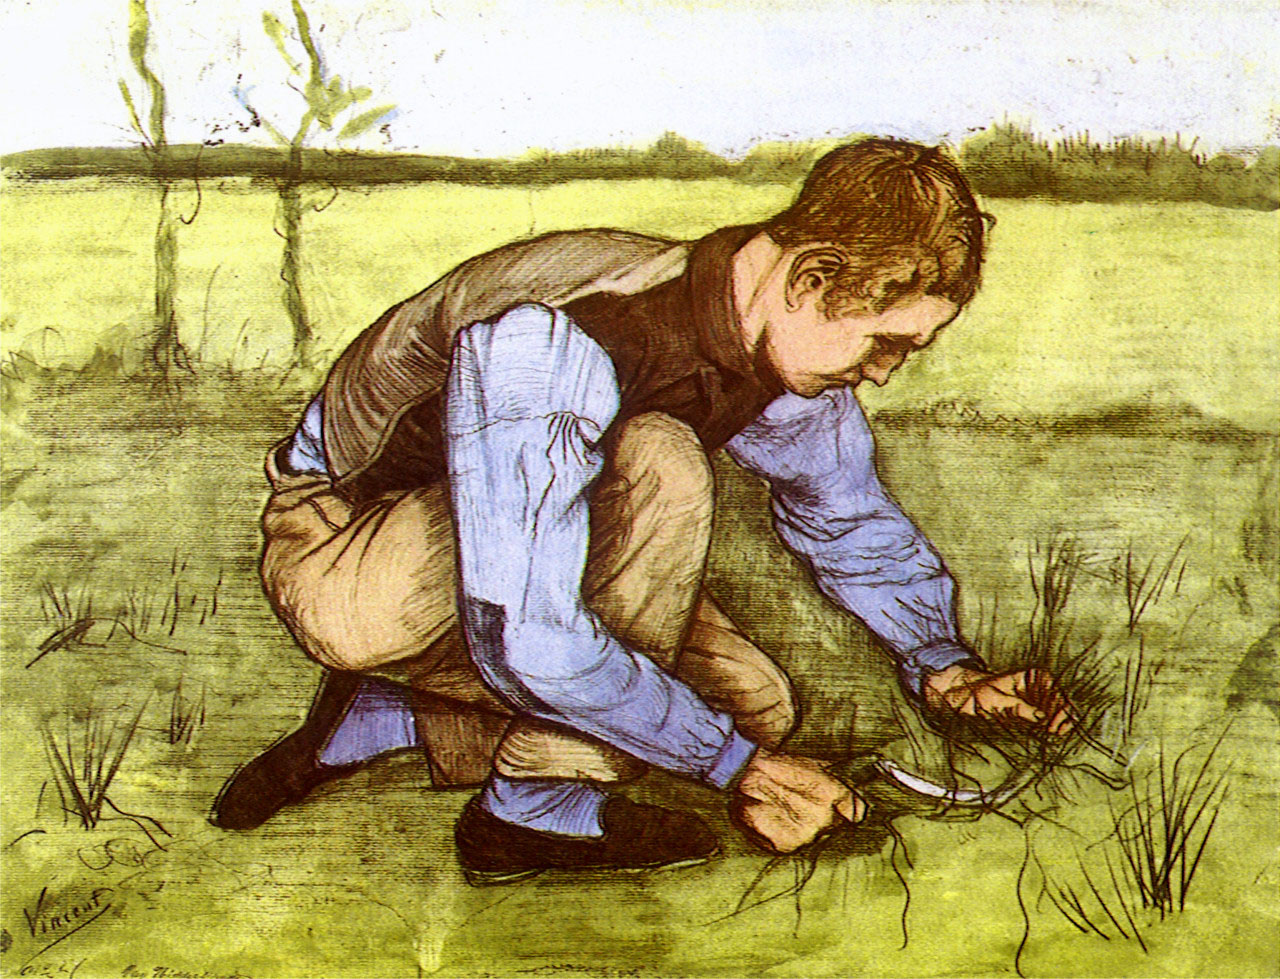 Винсент Ван Гог. "Мальчик, срезающий траву серпом". 1881.